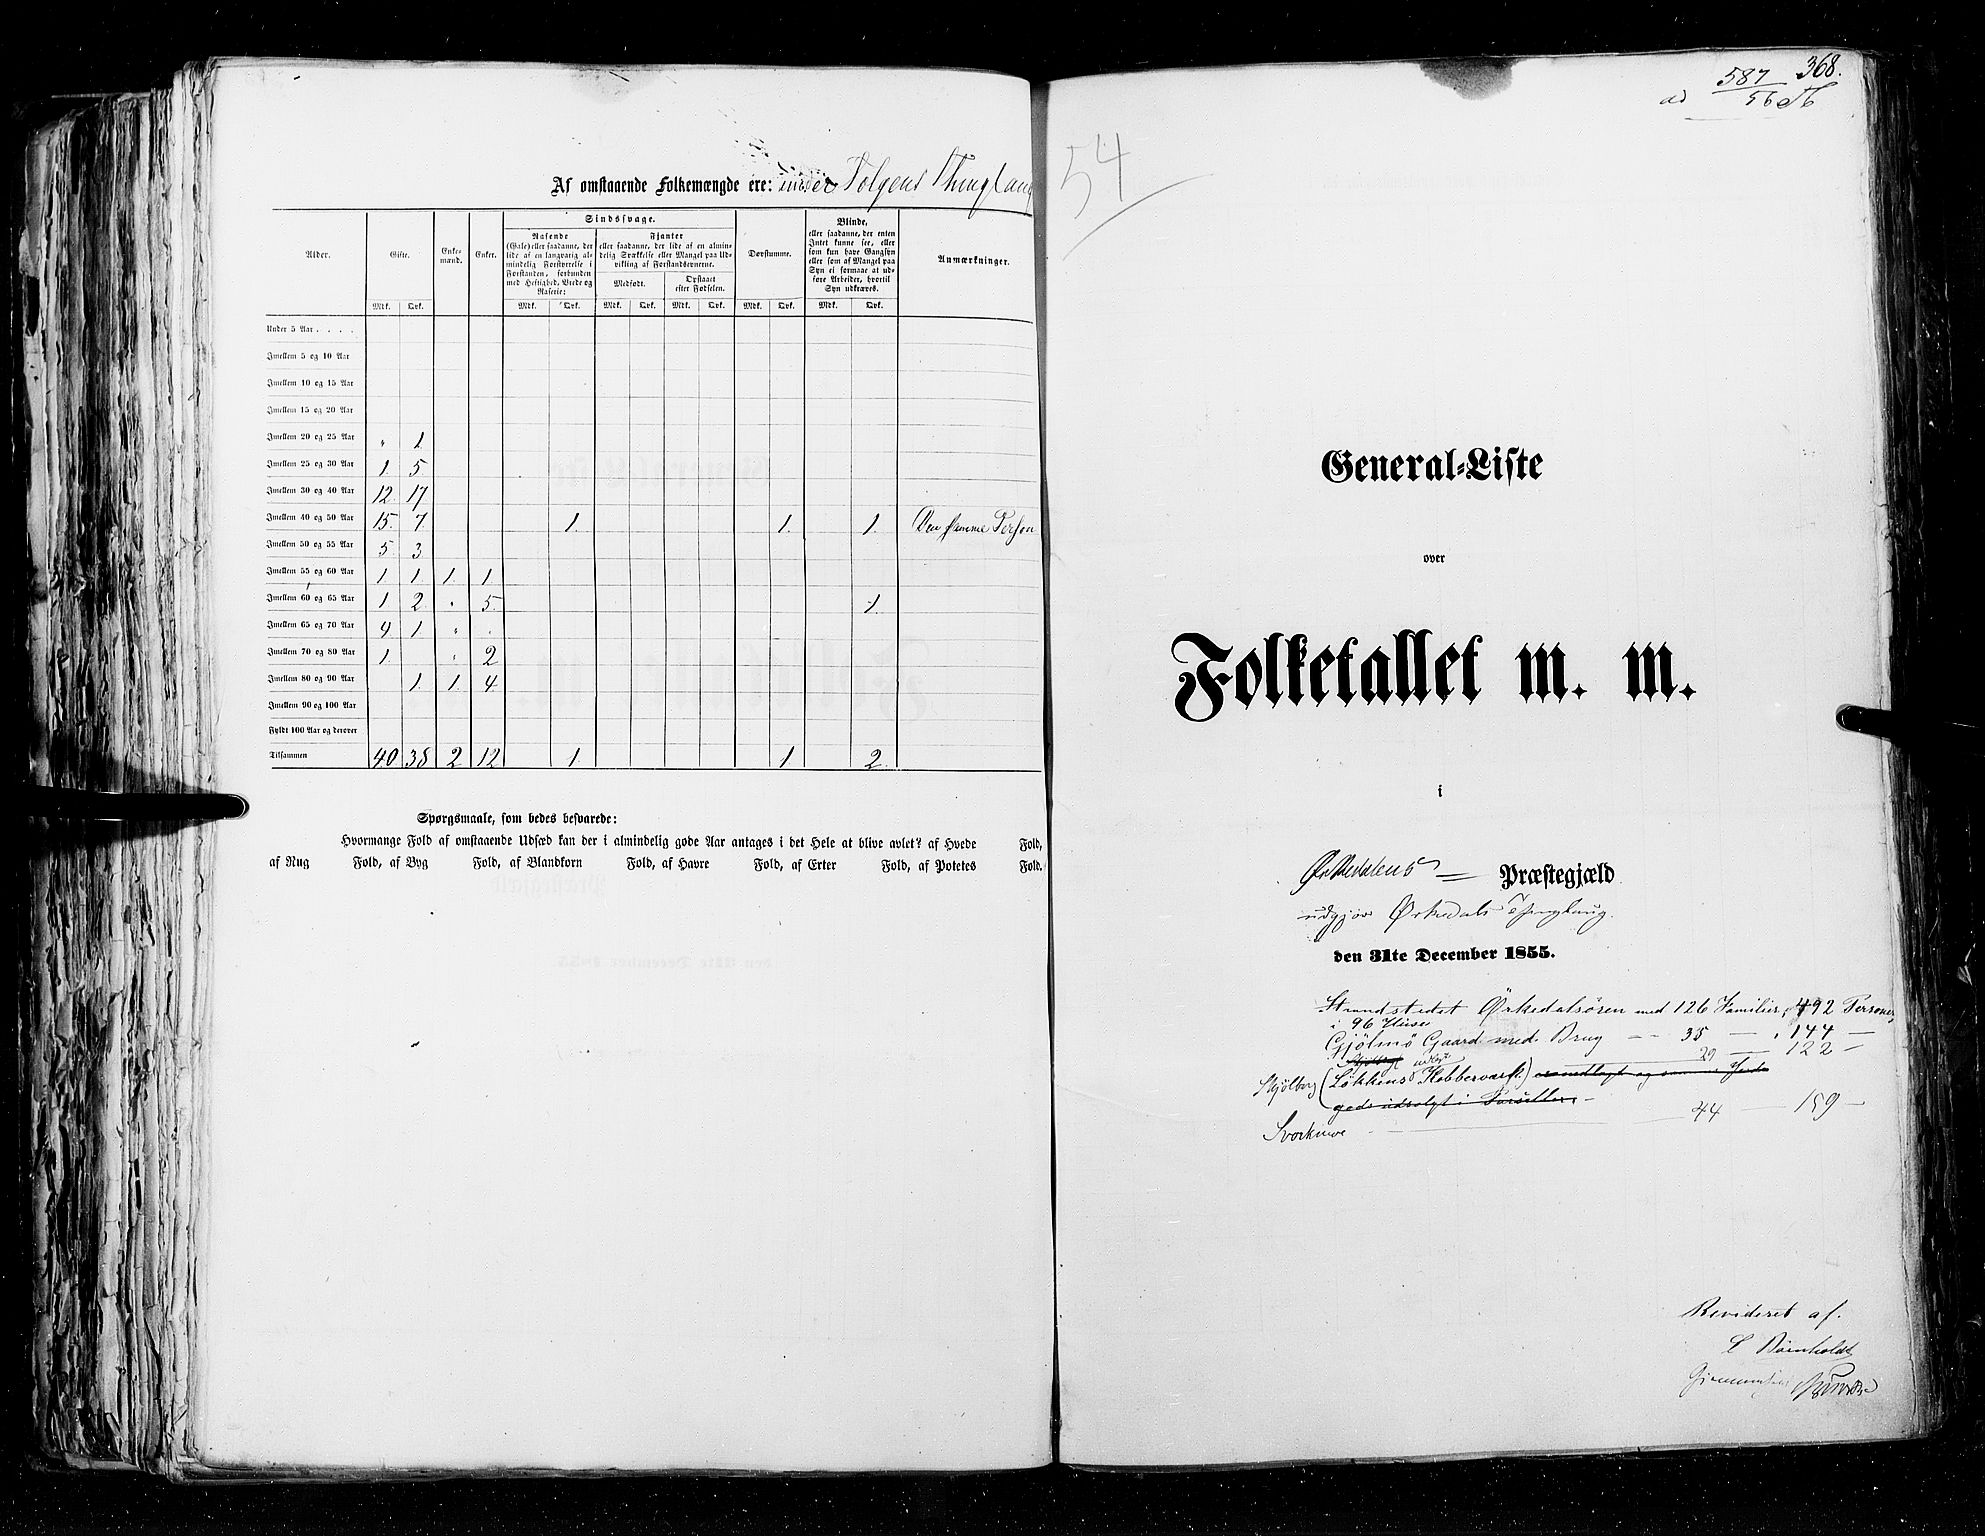 RA, Census 1855, vol. 5: Nordre Bergenhus amt, Romsdal amt og Søndre Trondhjem amt, 1855, p. 368